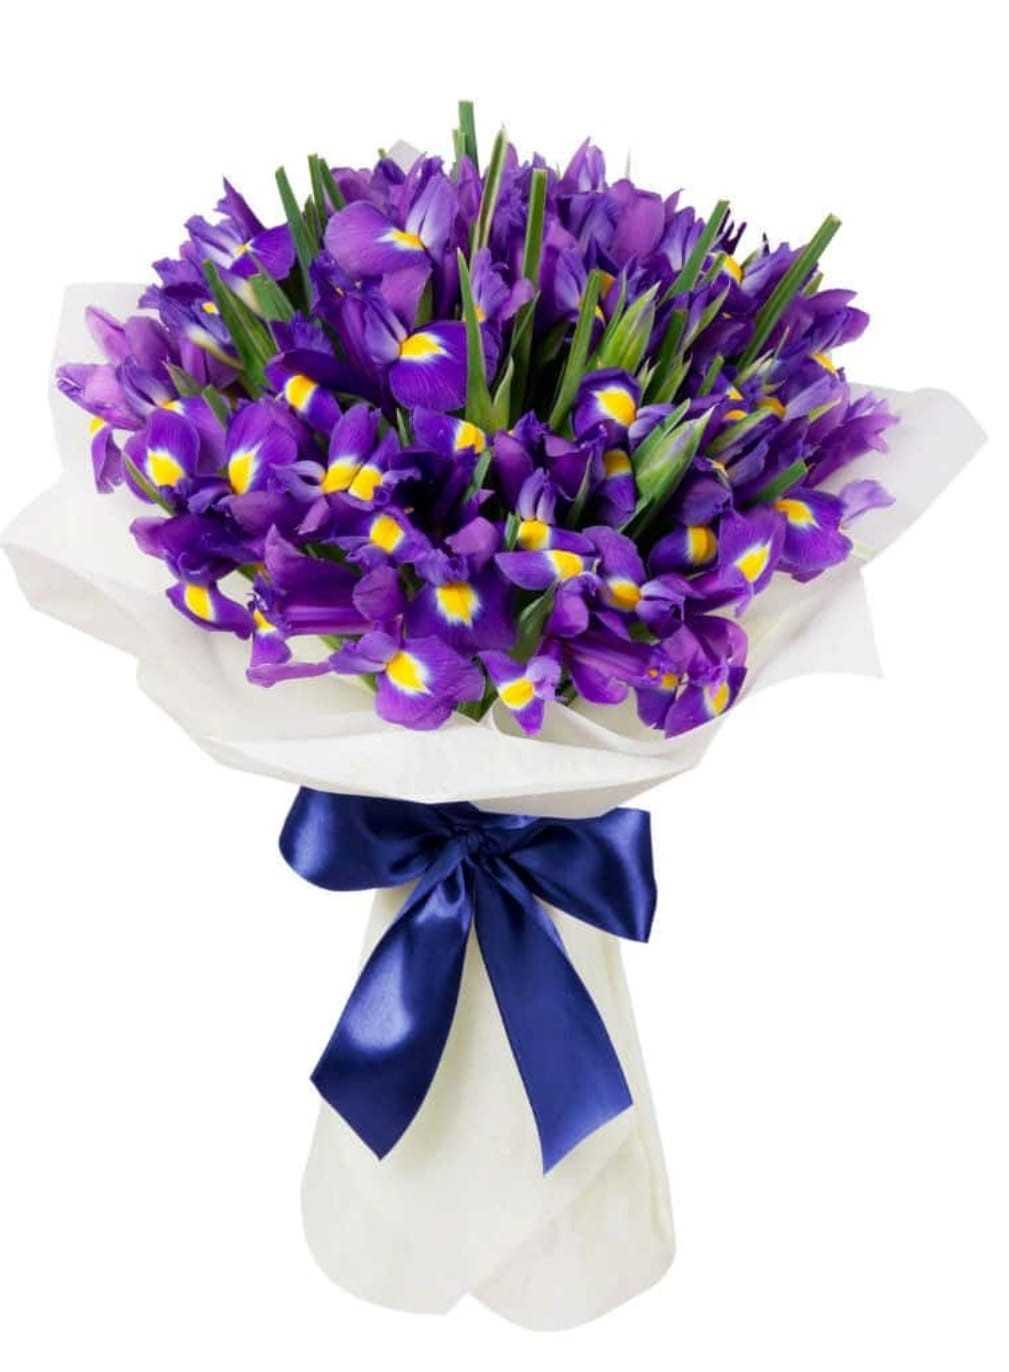 Irises - Purple